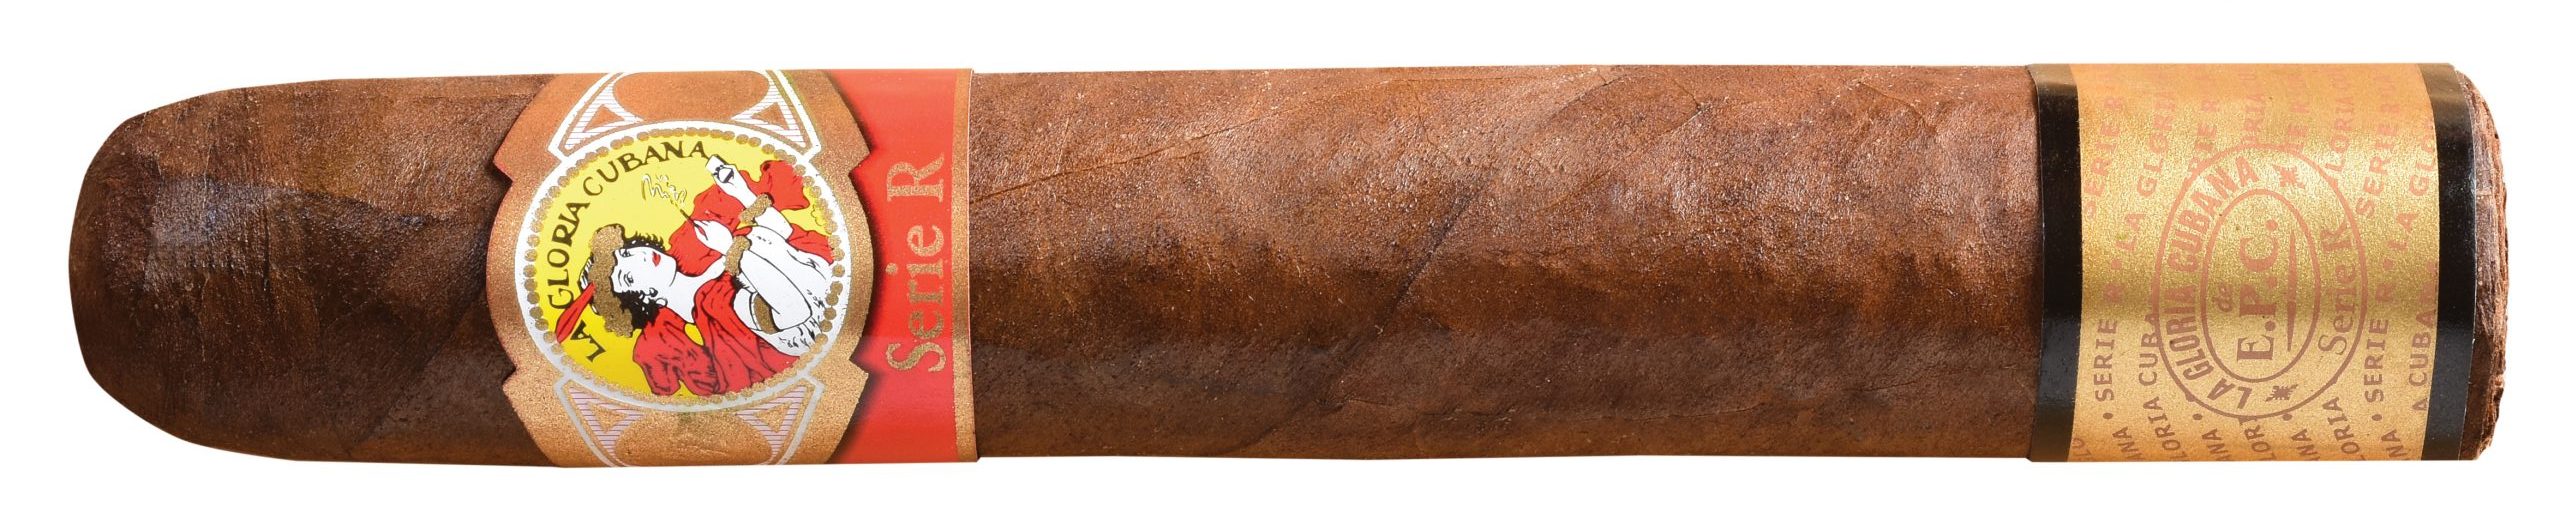 la gloria cubana serie r number 6 single cigar